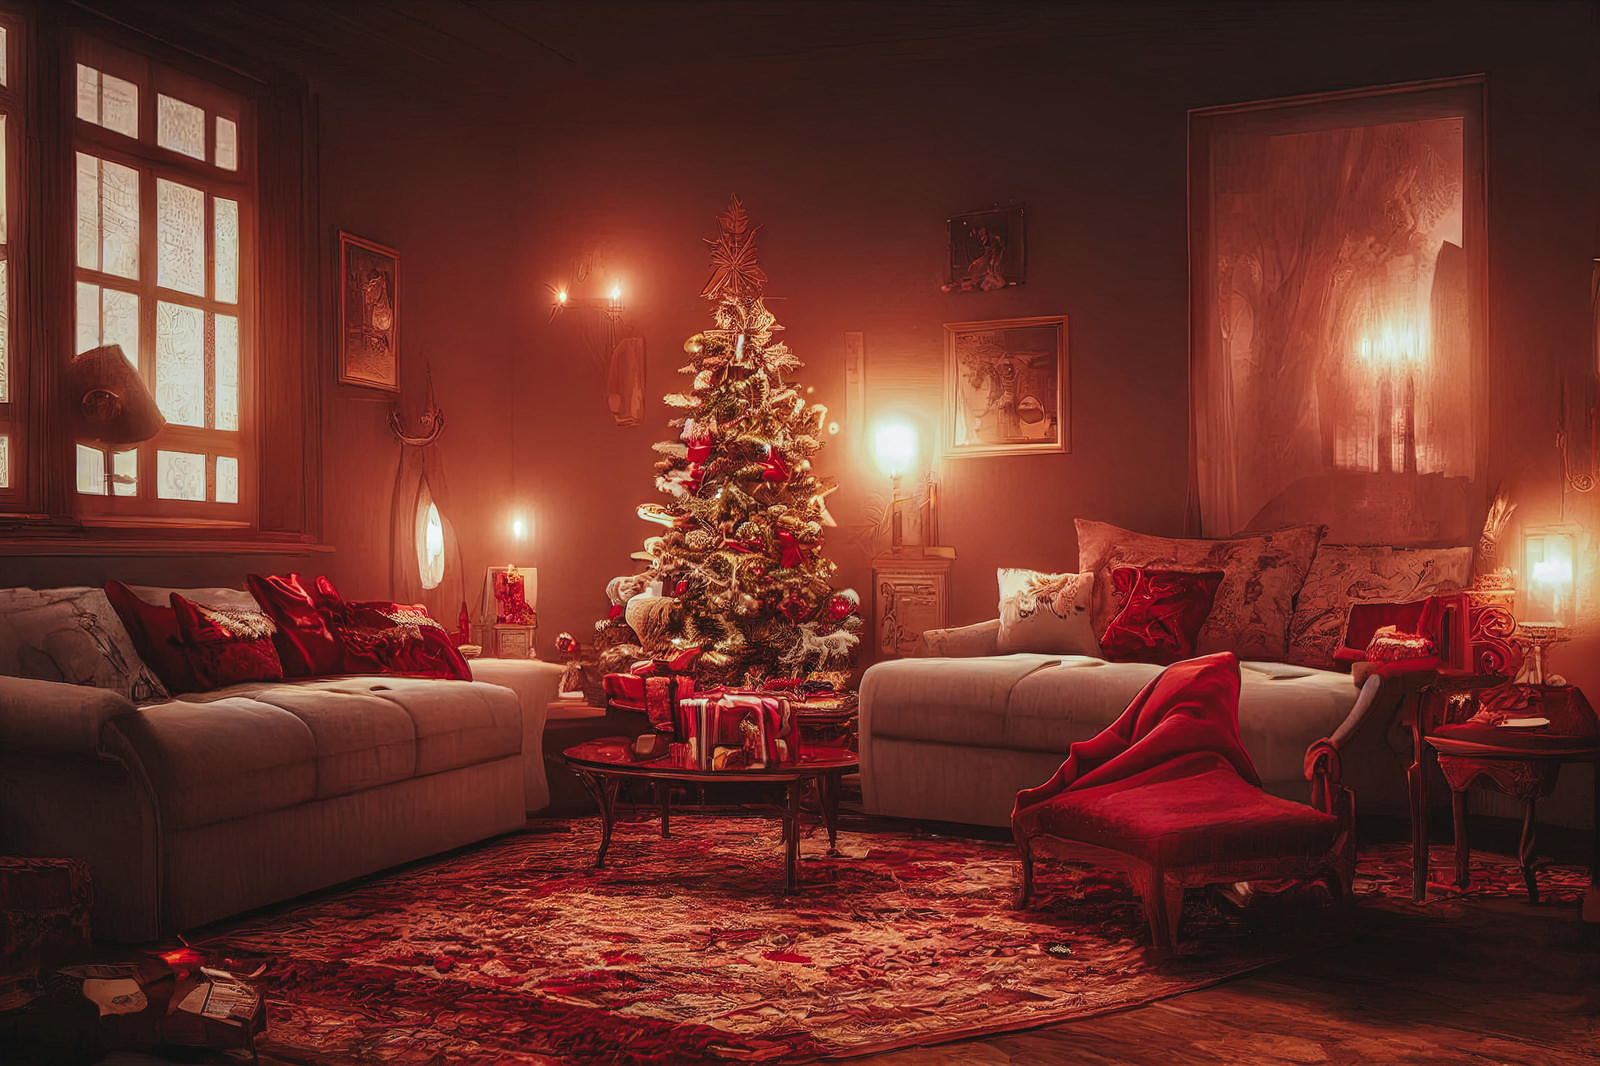 「クリスマスツリーが中央に置かれライトアップされた室内 | フリー素材のぱくたそ」の写真